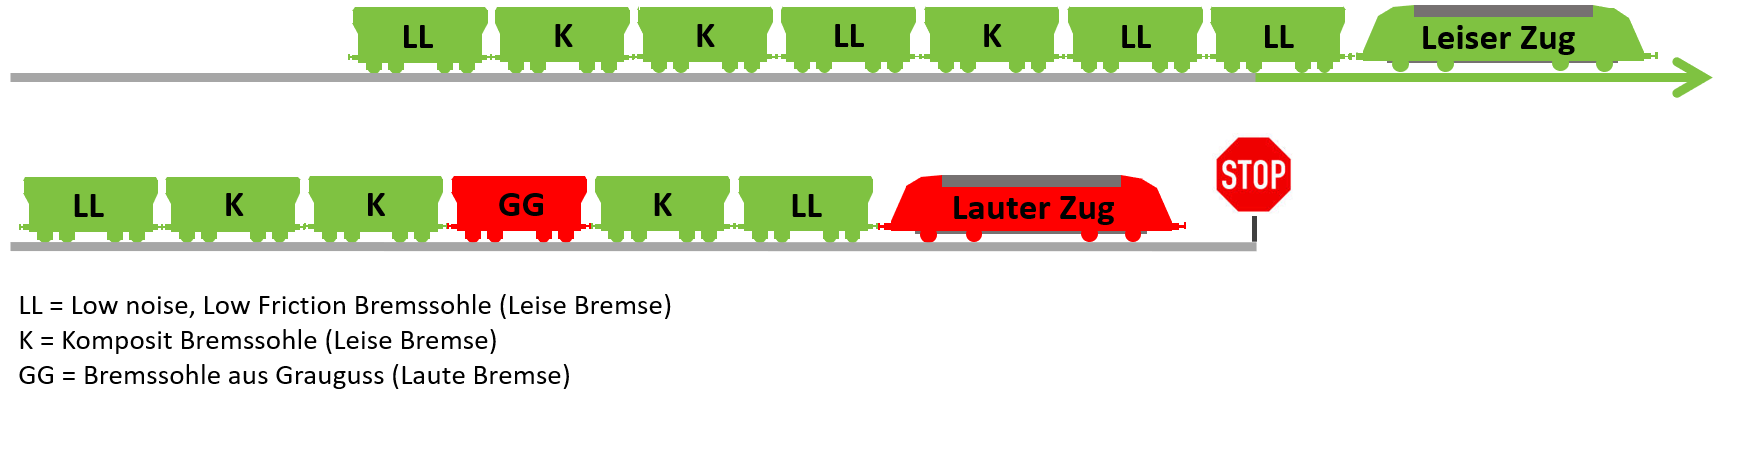 Umsetzung des Fahrverbots lauter Güterzüge auf dem deutschen Schienennetz